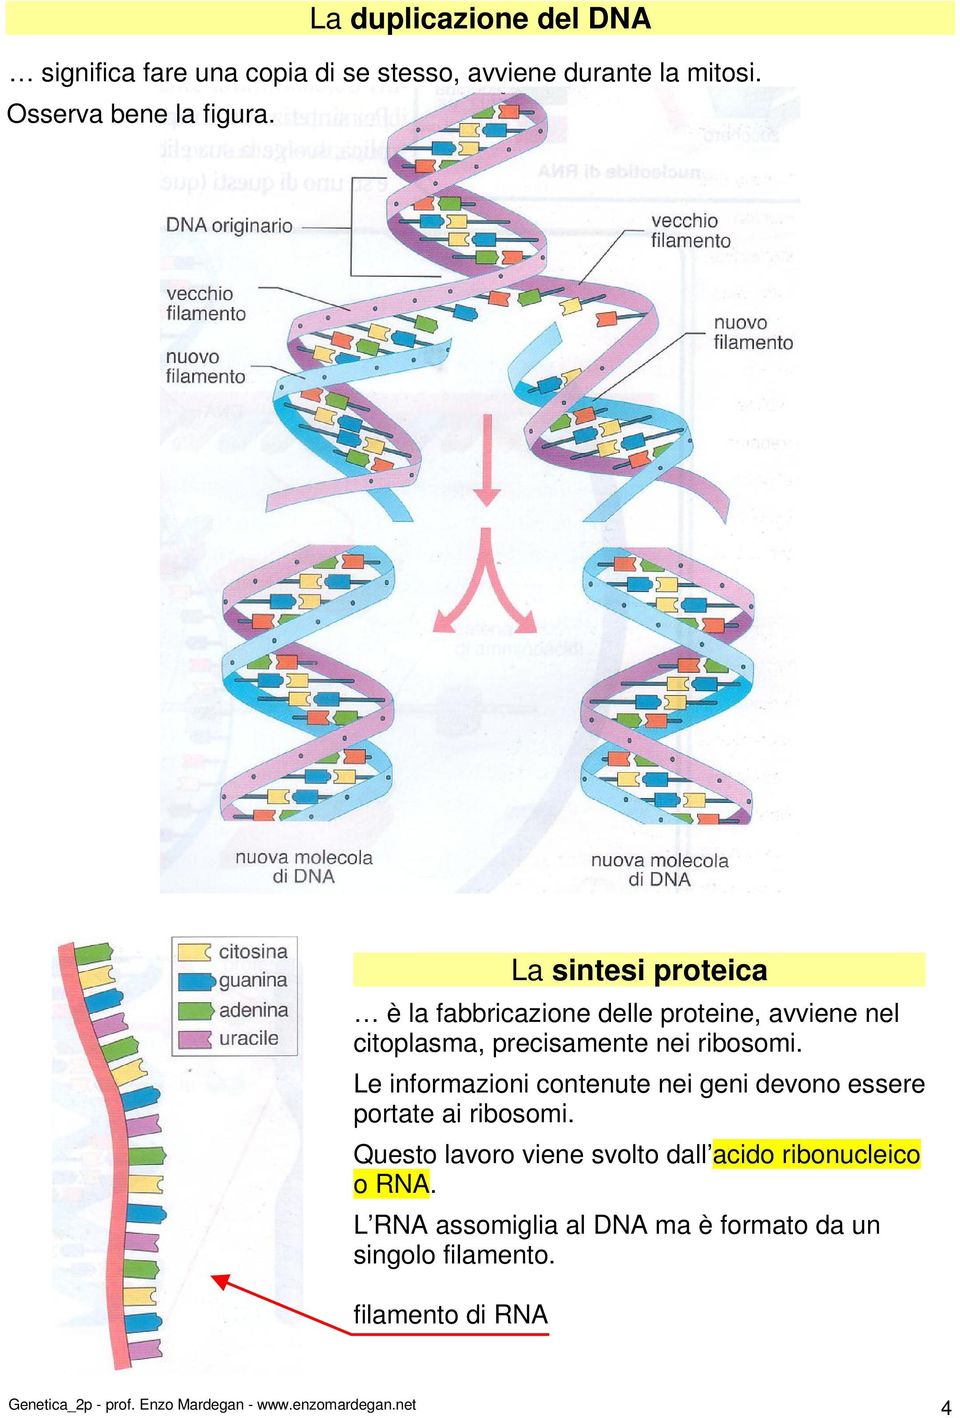 Le informazioni contenute nei geni devono essere portate ai ribosomi.